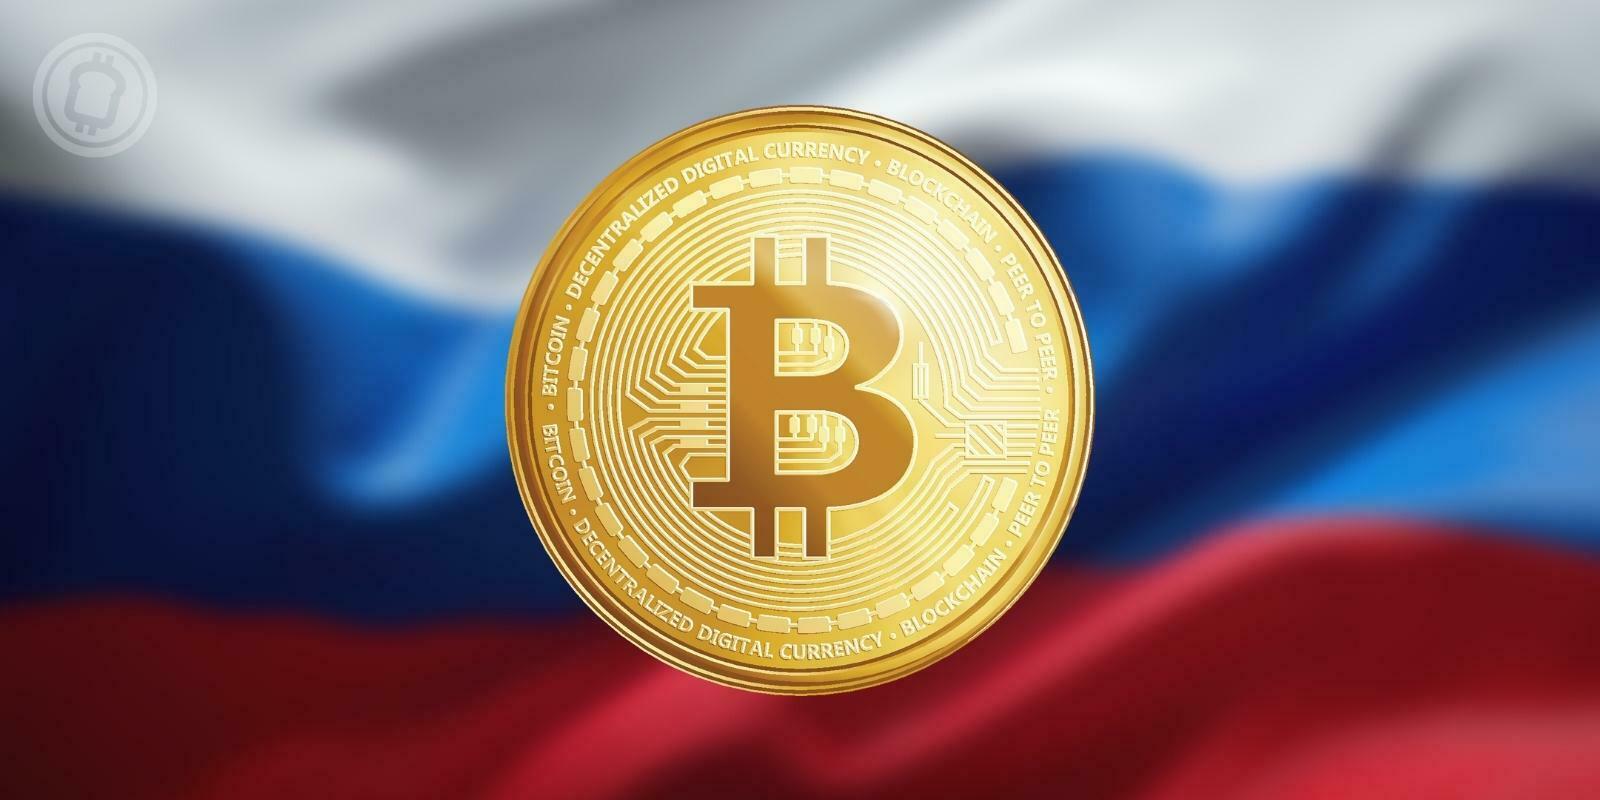 Les Russes détiendraient 12 % de la capitalisation totale des cryptomonnaies